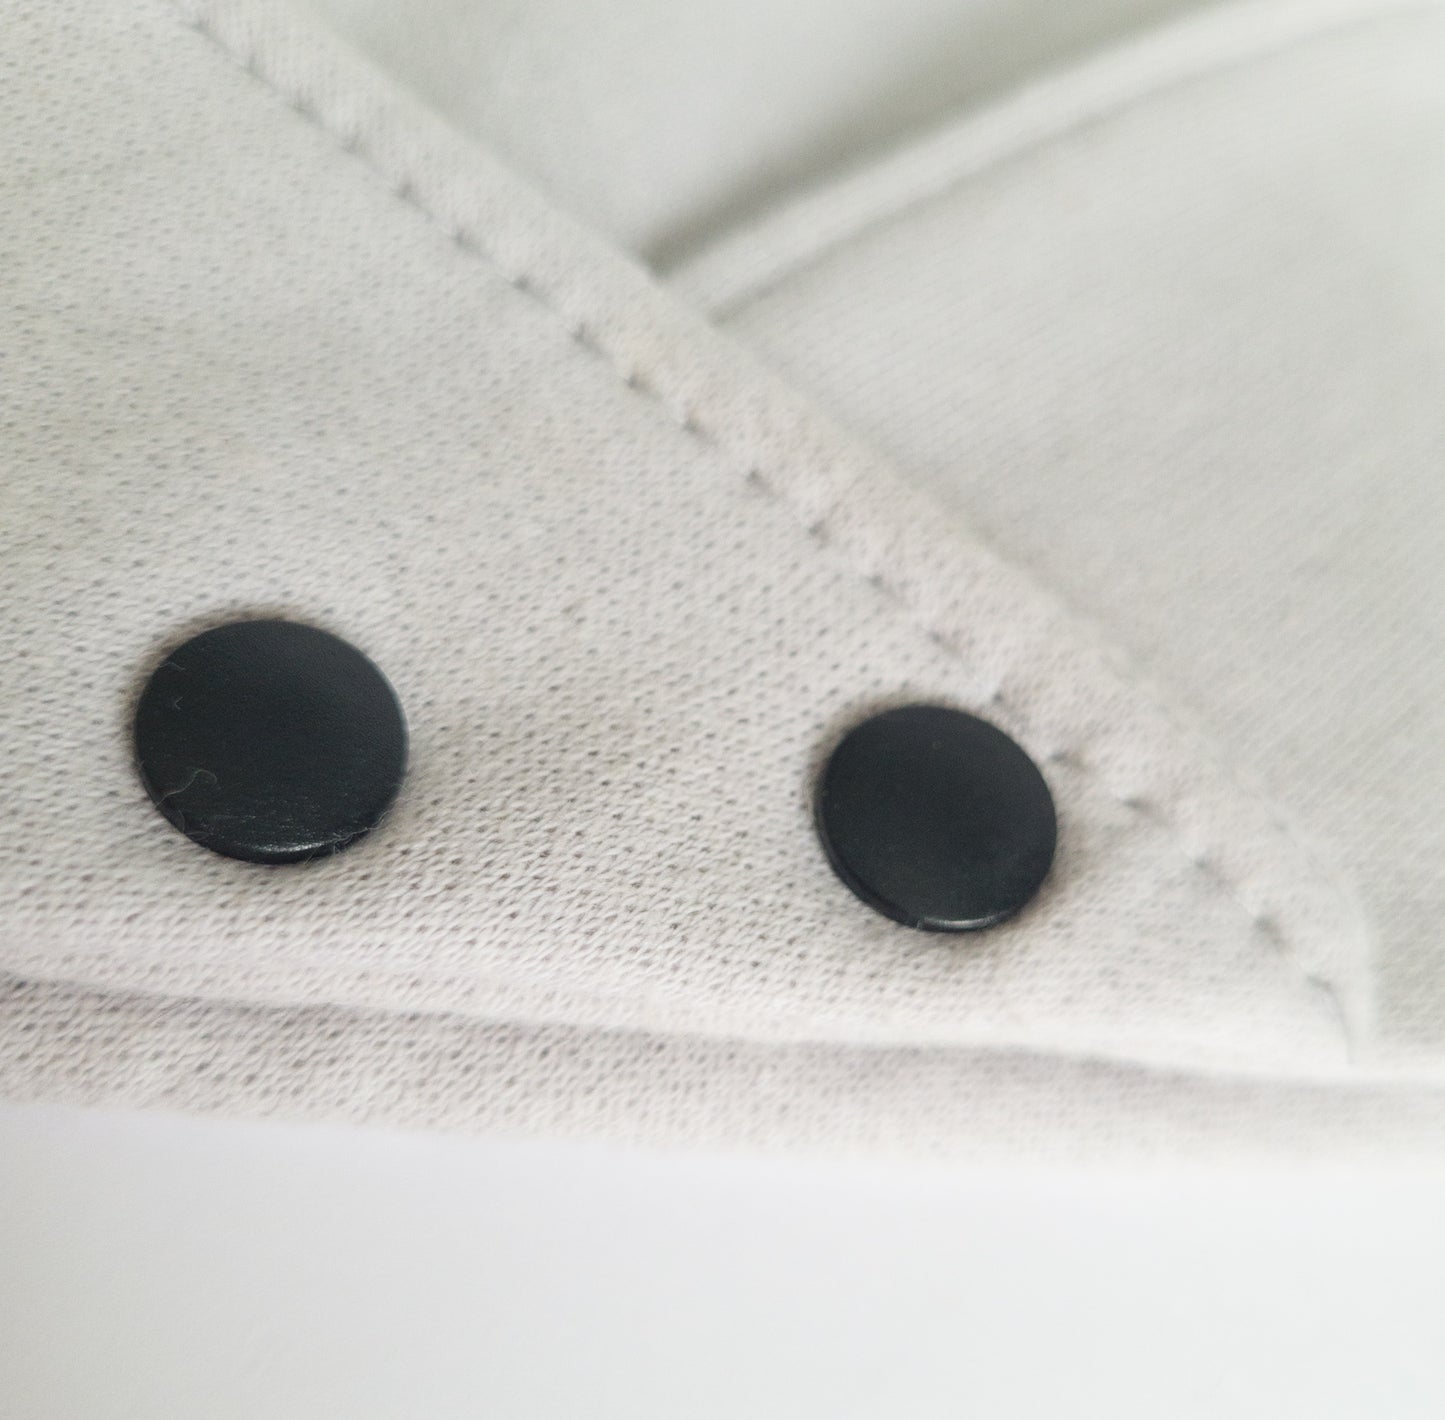 Gros plan sur les boutons pressions noir en plastique de notre bandanas de coton ouaté gris clair.